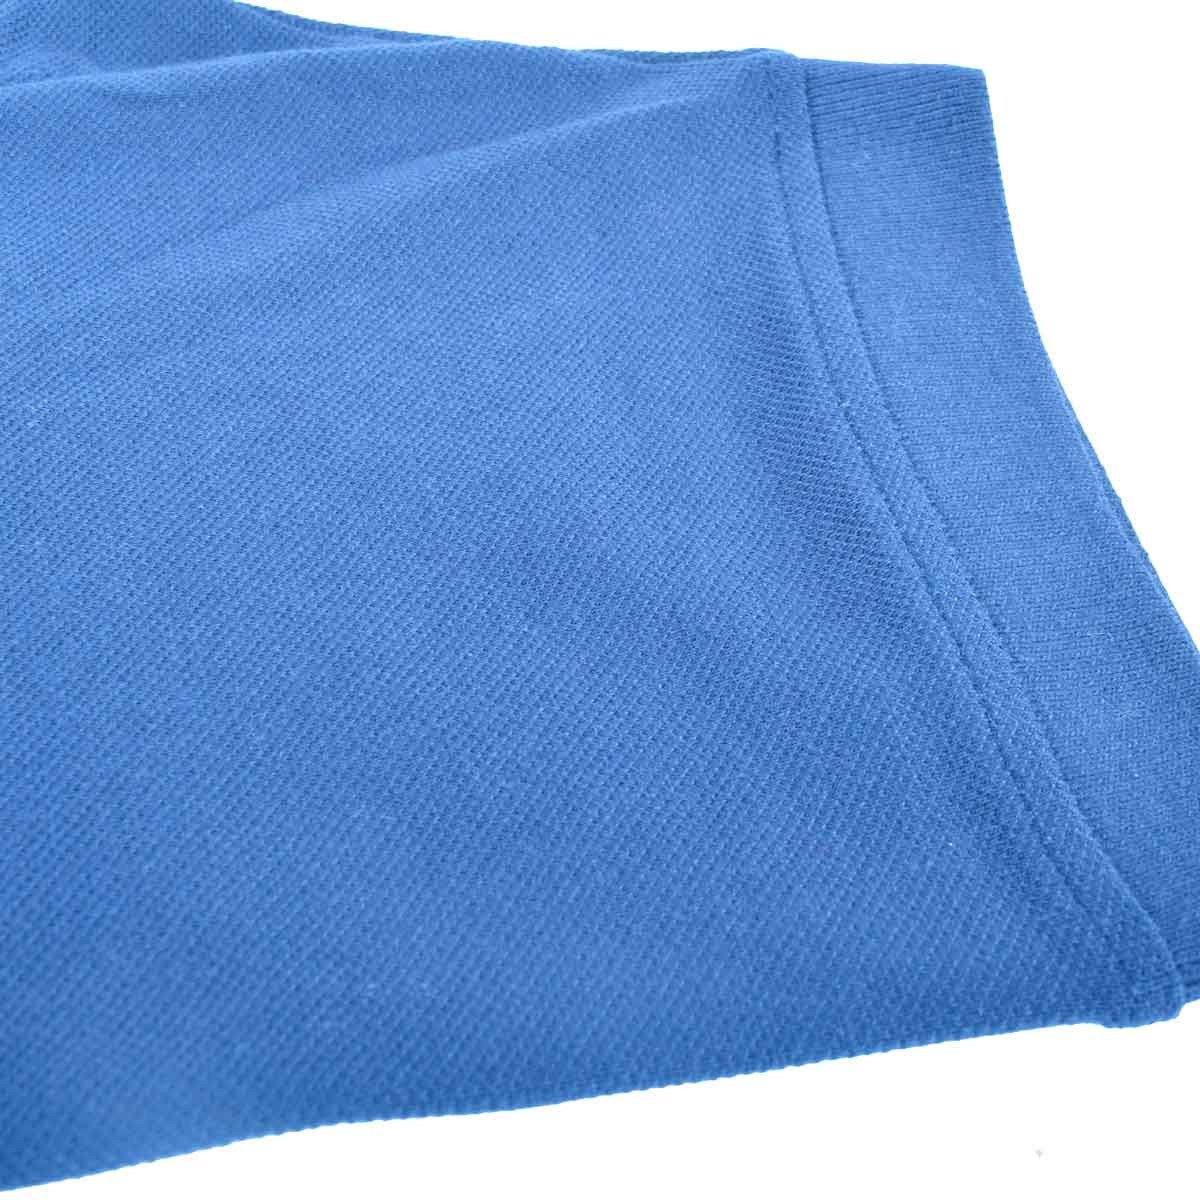 Totga Short Sleeve B Quality Polo Shirt001 B Quality Image 